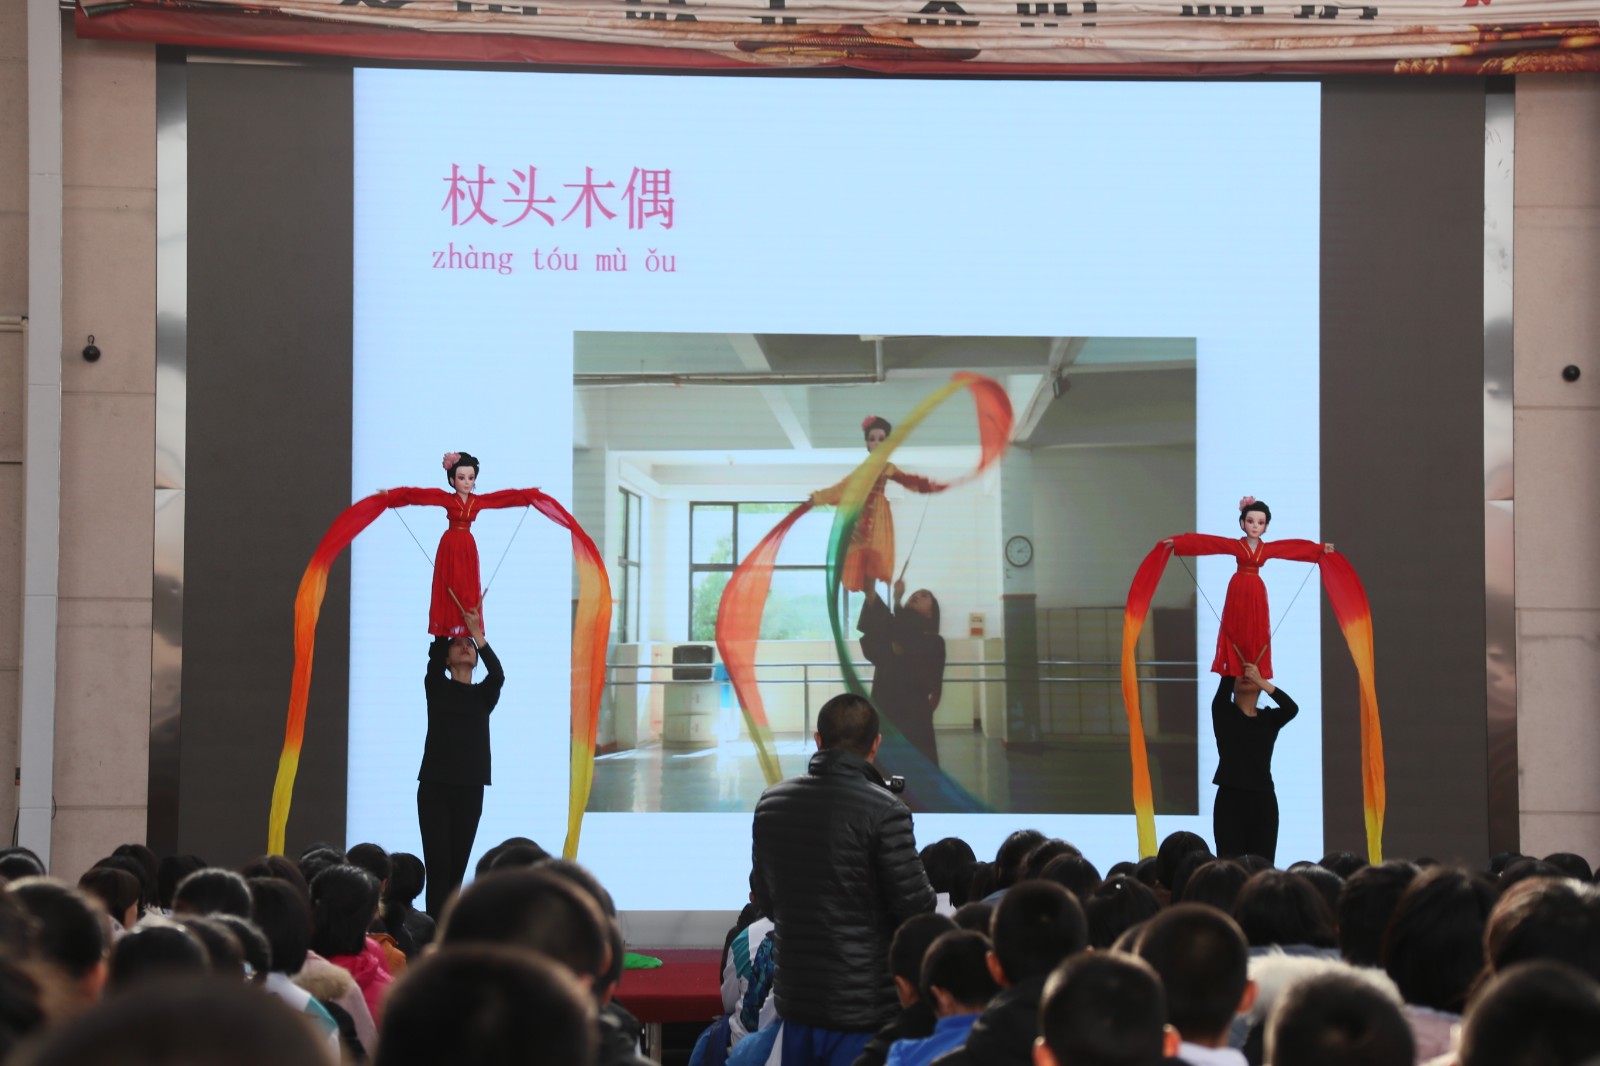 上海戏剧学院附属戏曲学校到济南第三十四中学送课